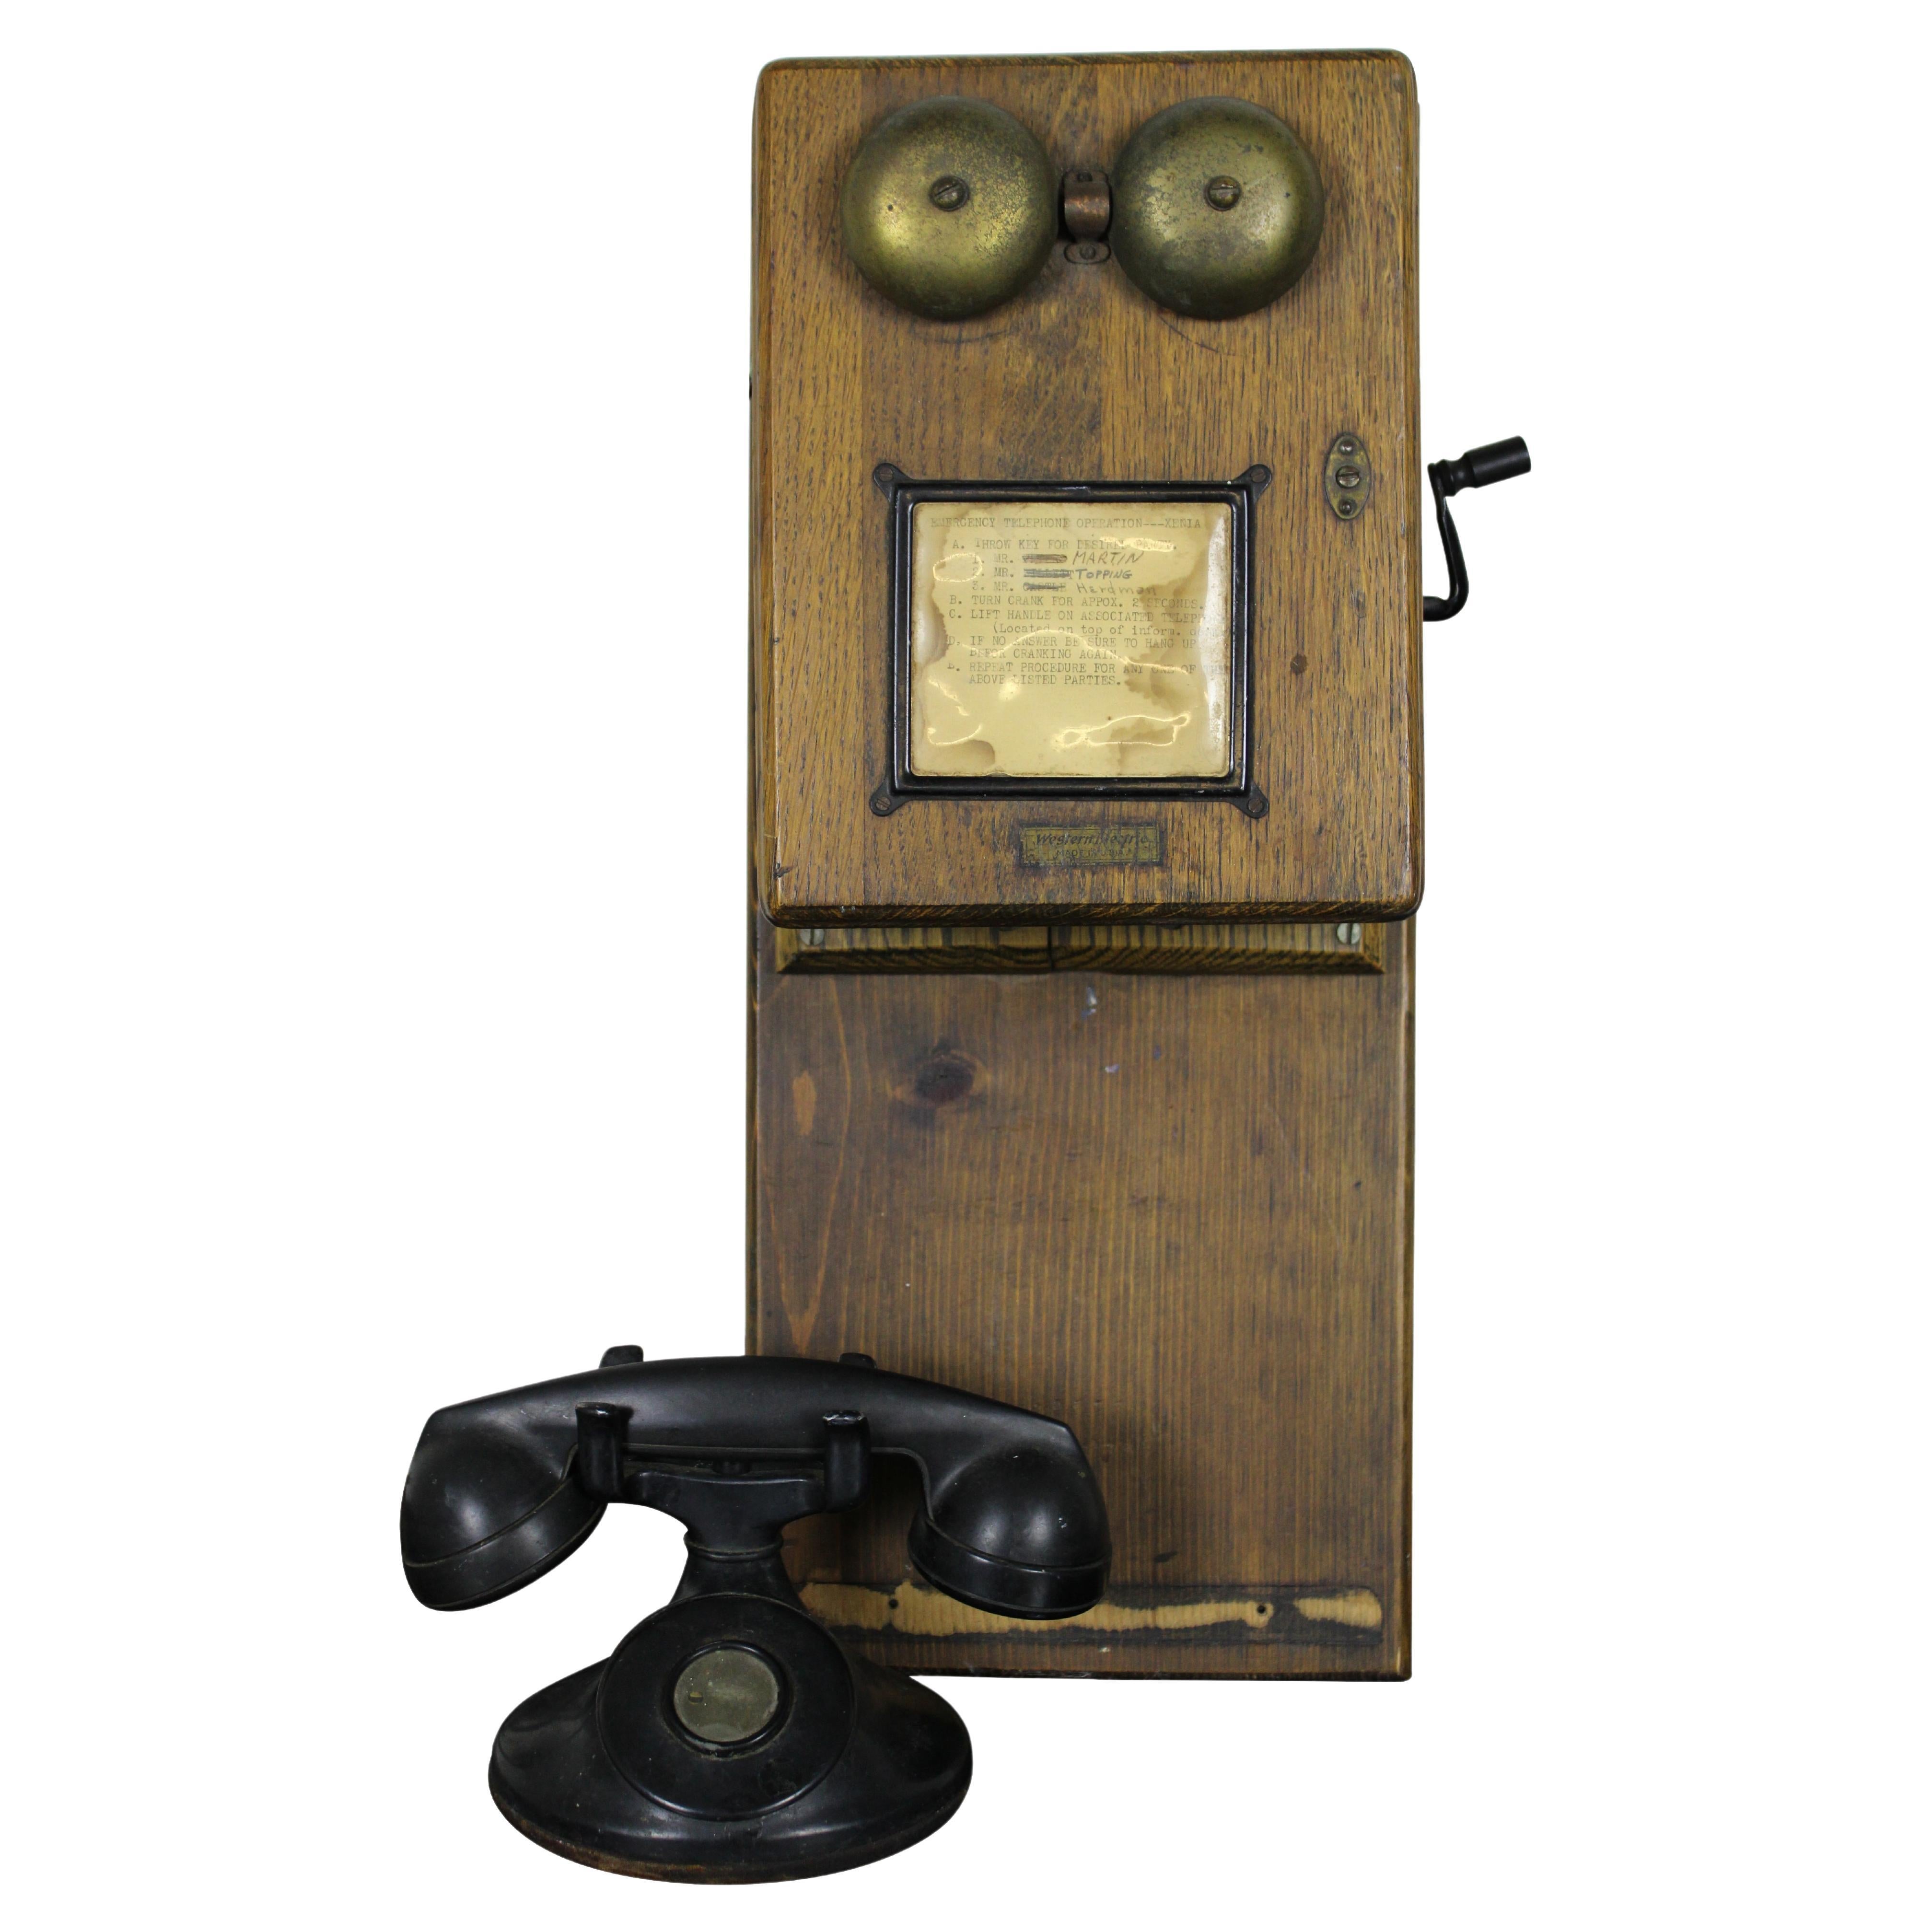 Bakelite Telephone - 14 For Sale on 1stDibs | bakelite phone for ...